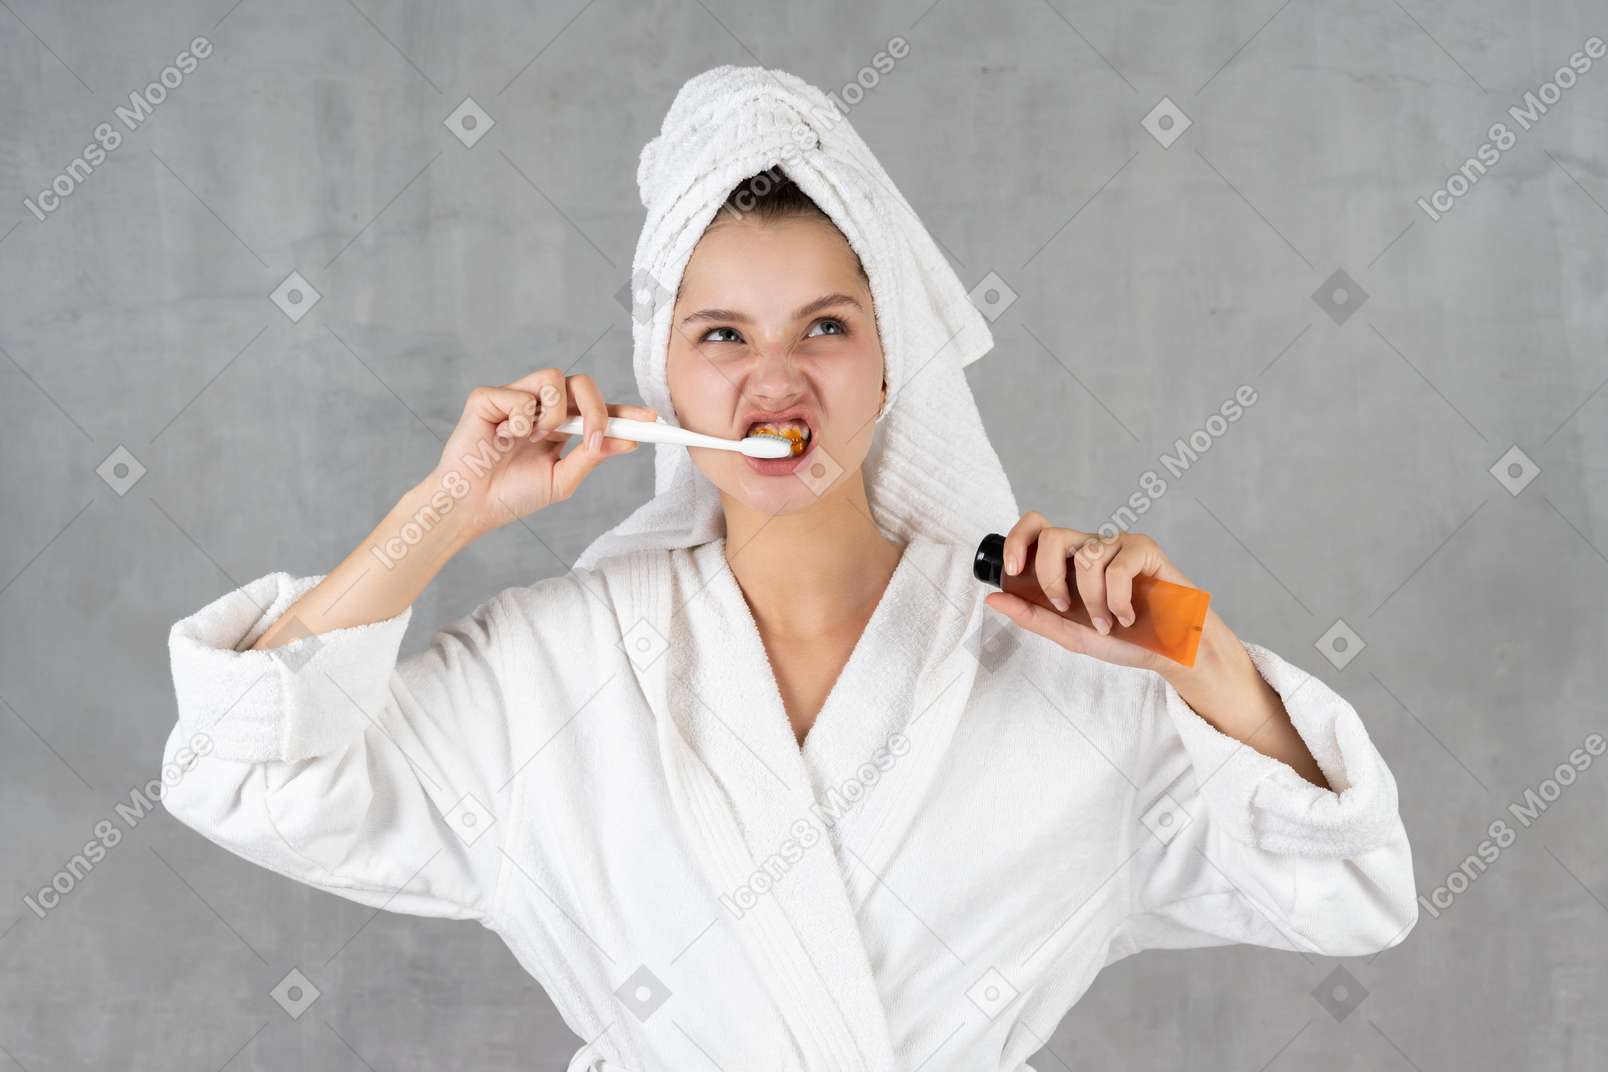 Mulher de roupão fazendo caretas enquanto escova os dentes